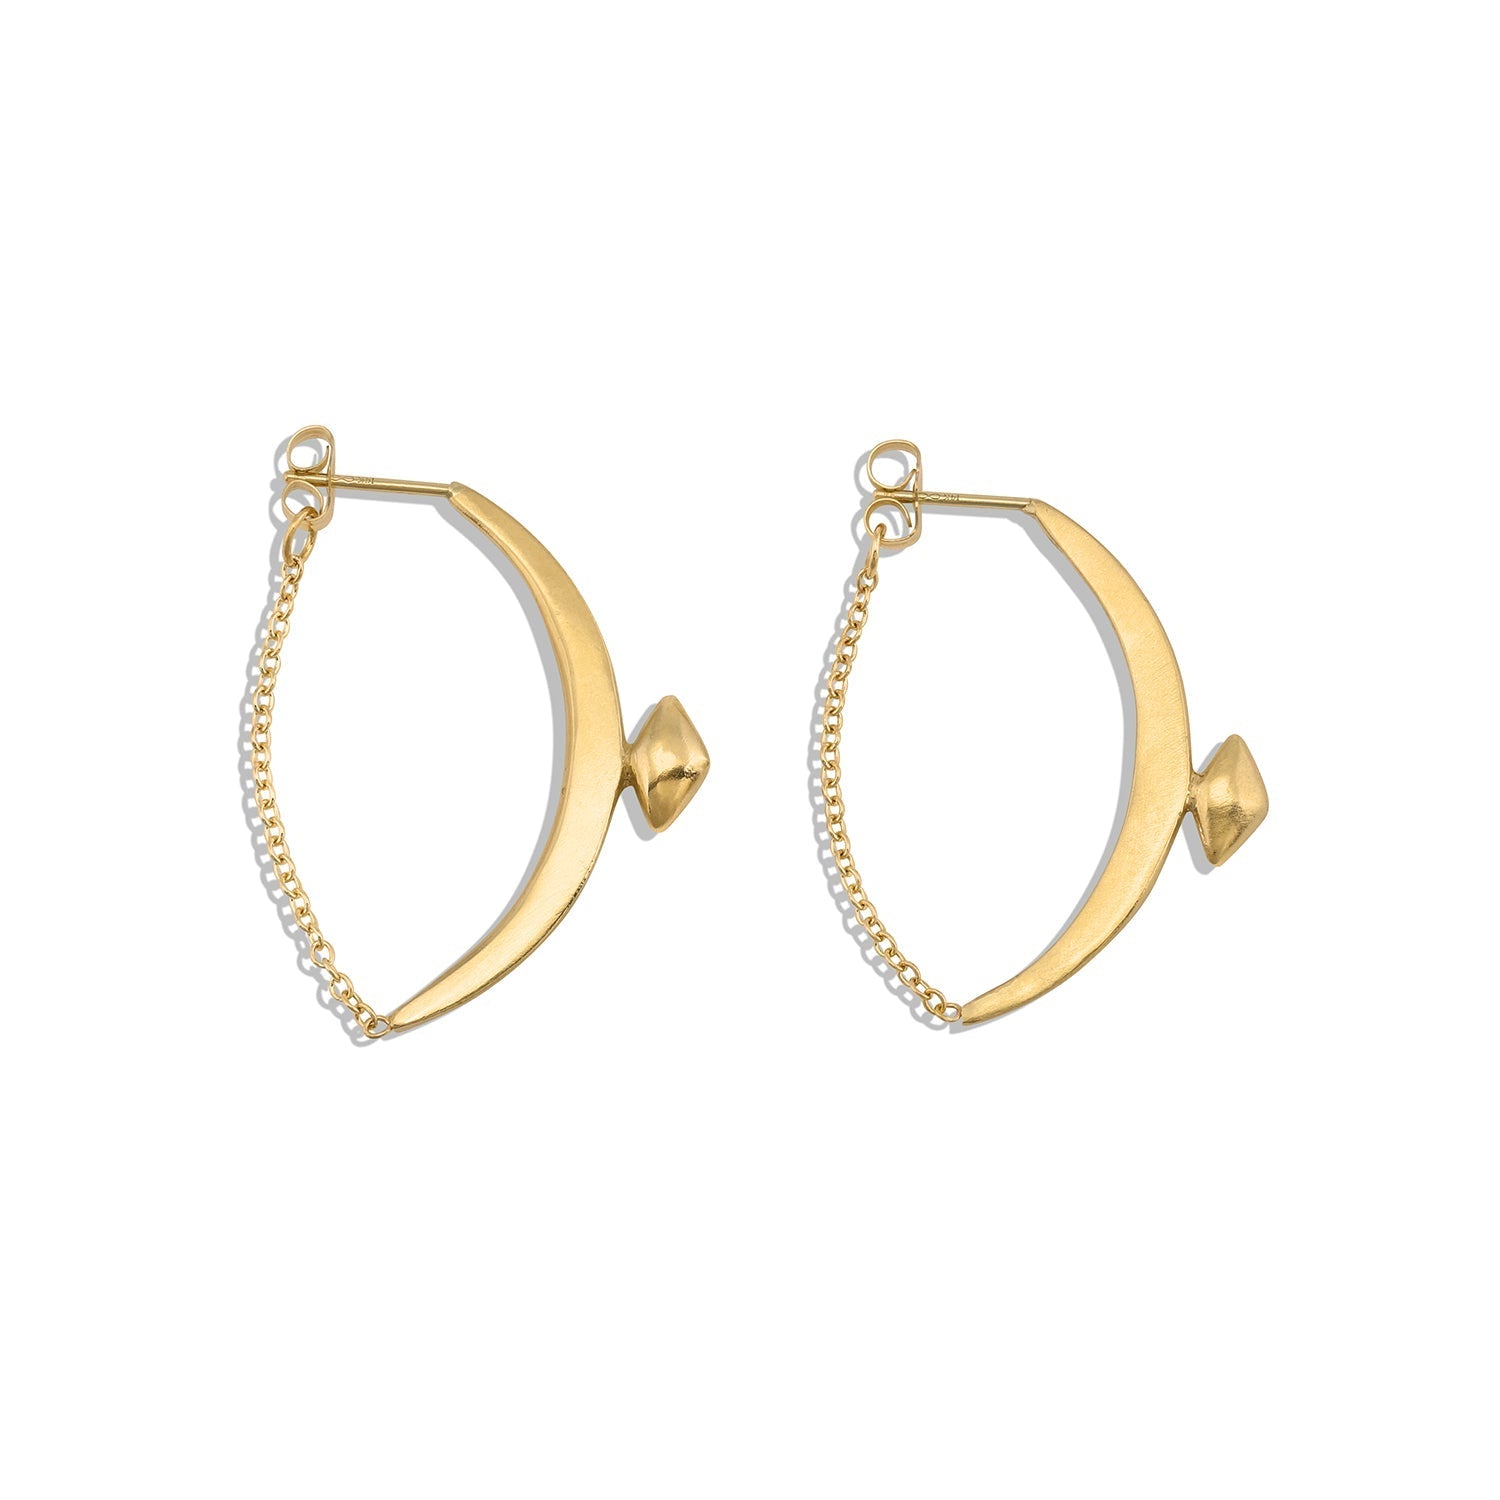 Fine Talisman Collection earrings diana's bow earrings